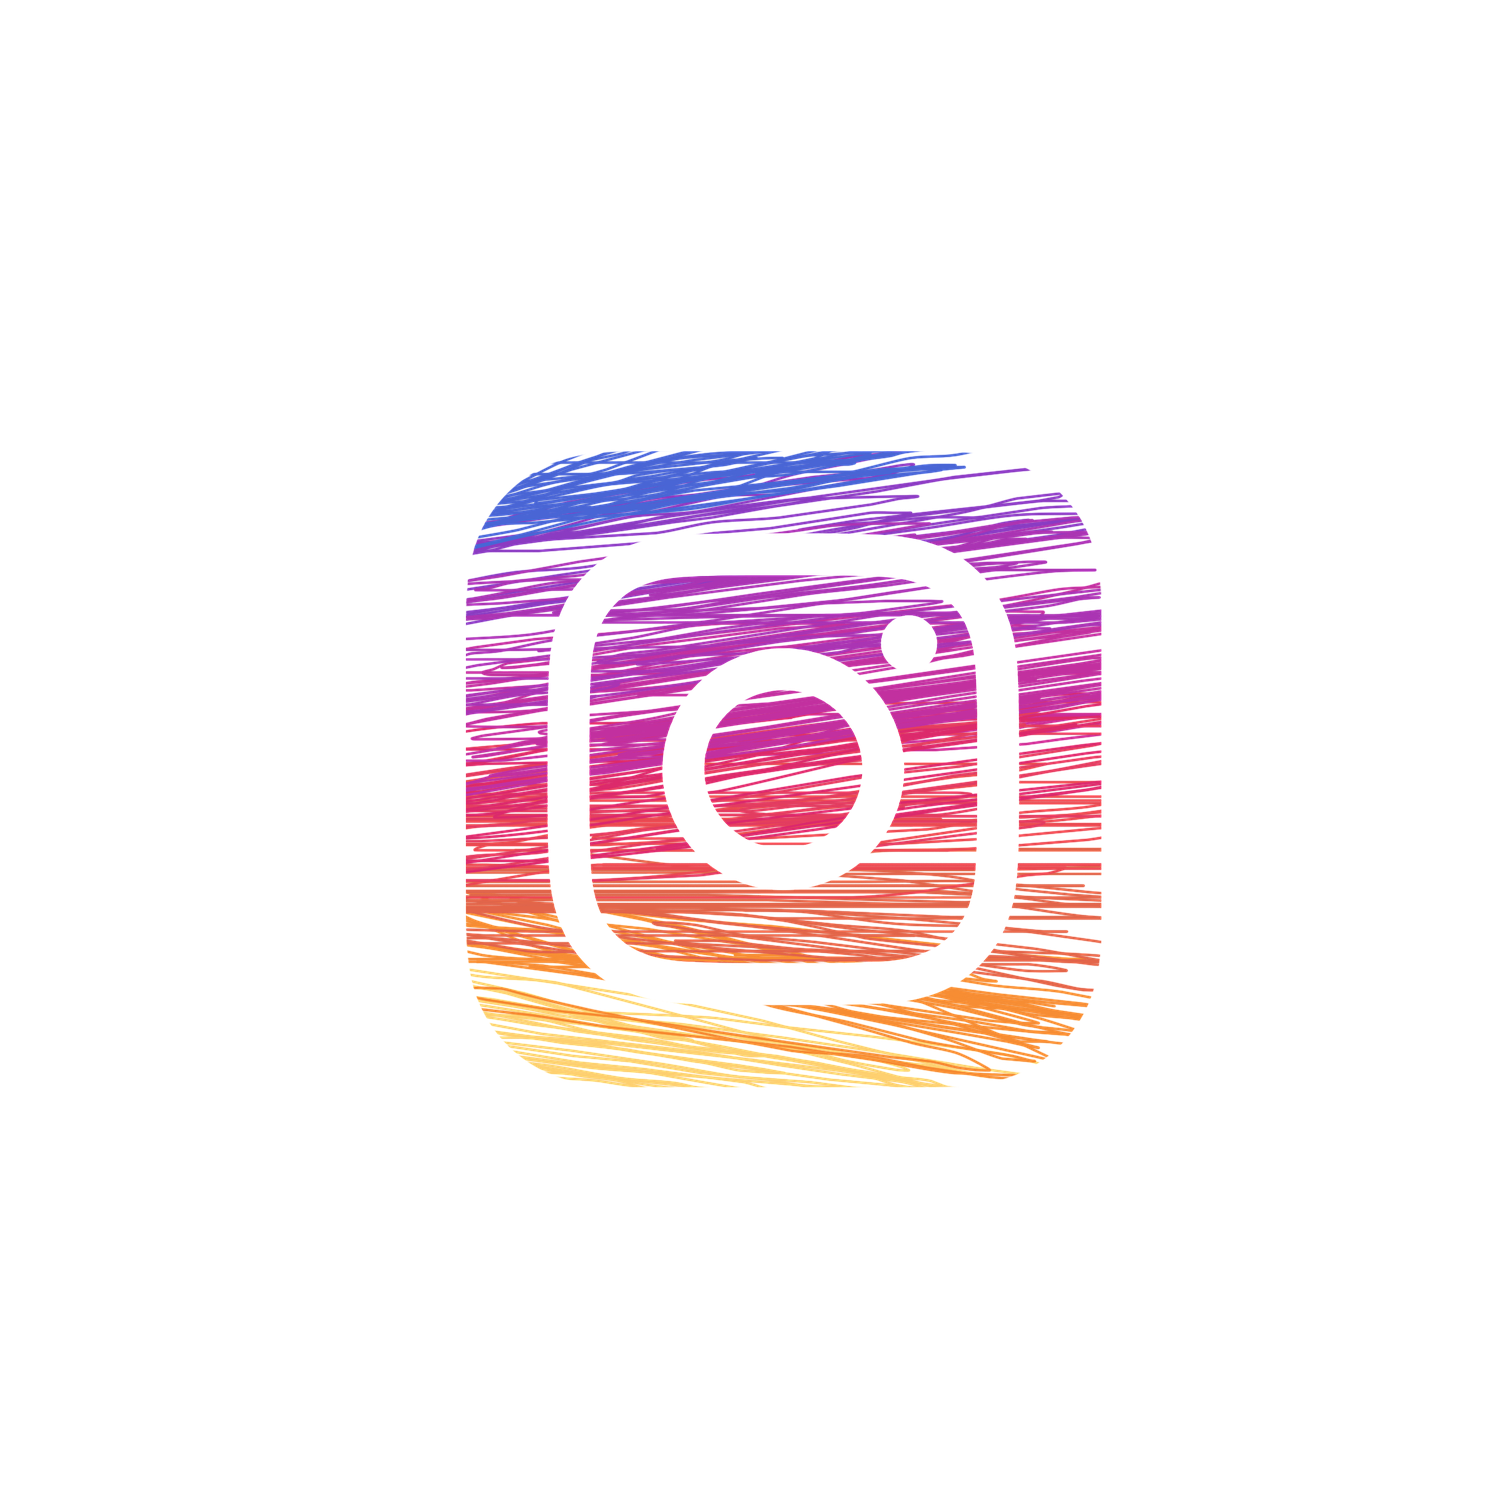 Instagram PNG Image in Transparent